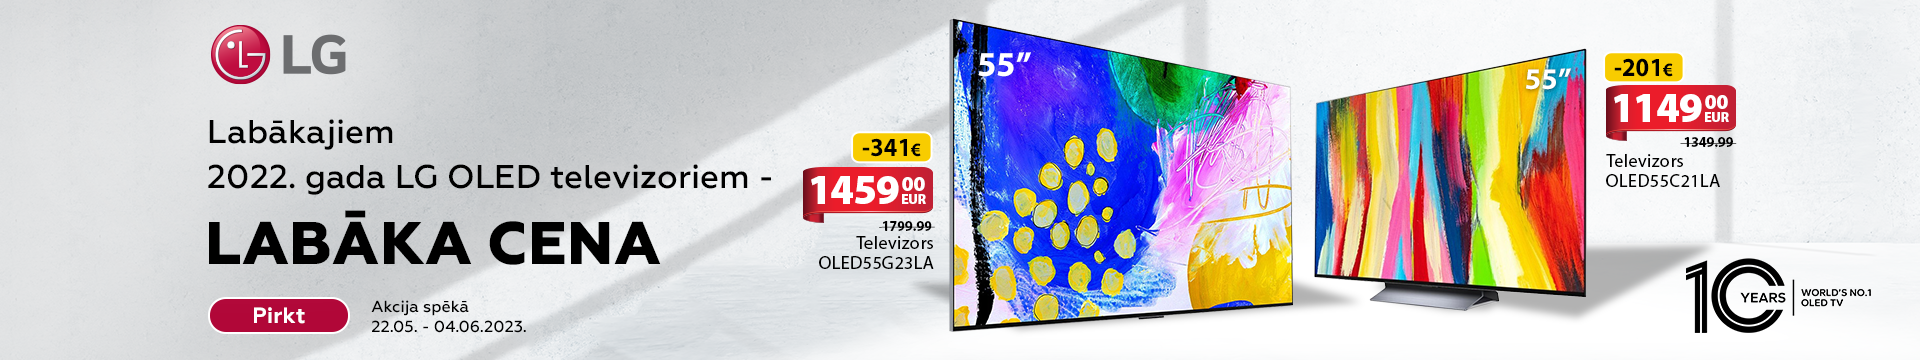 LG OLED televizoriem labākās cenas